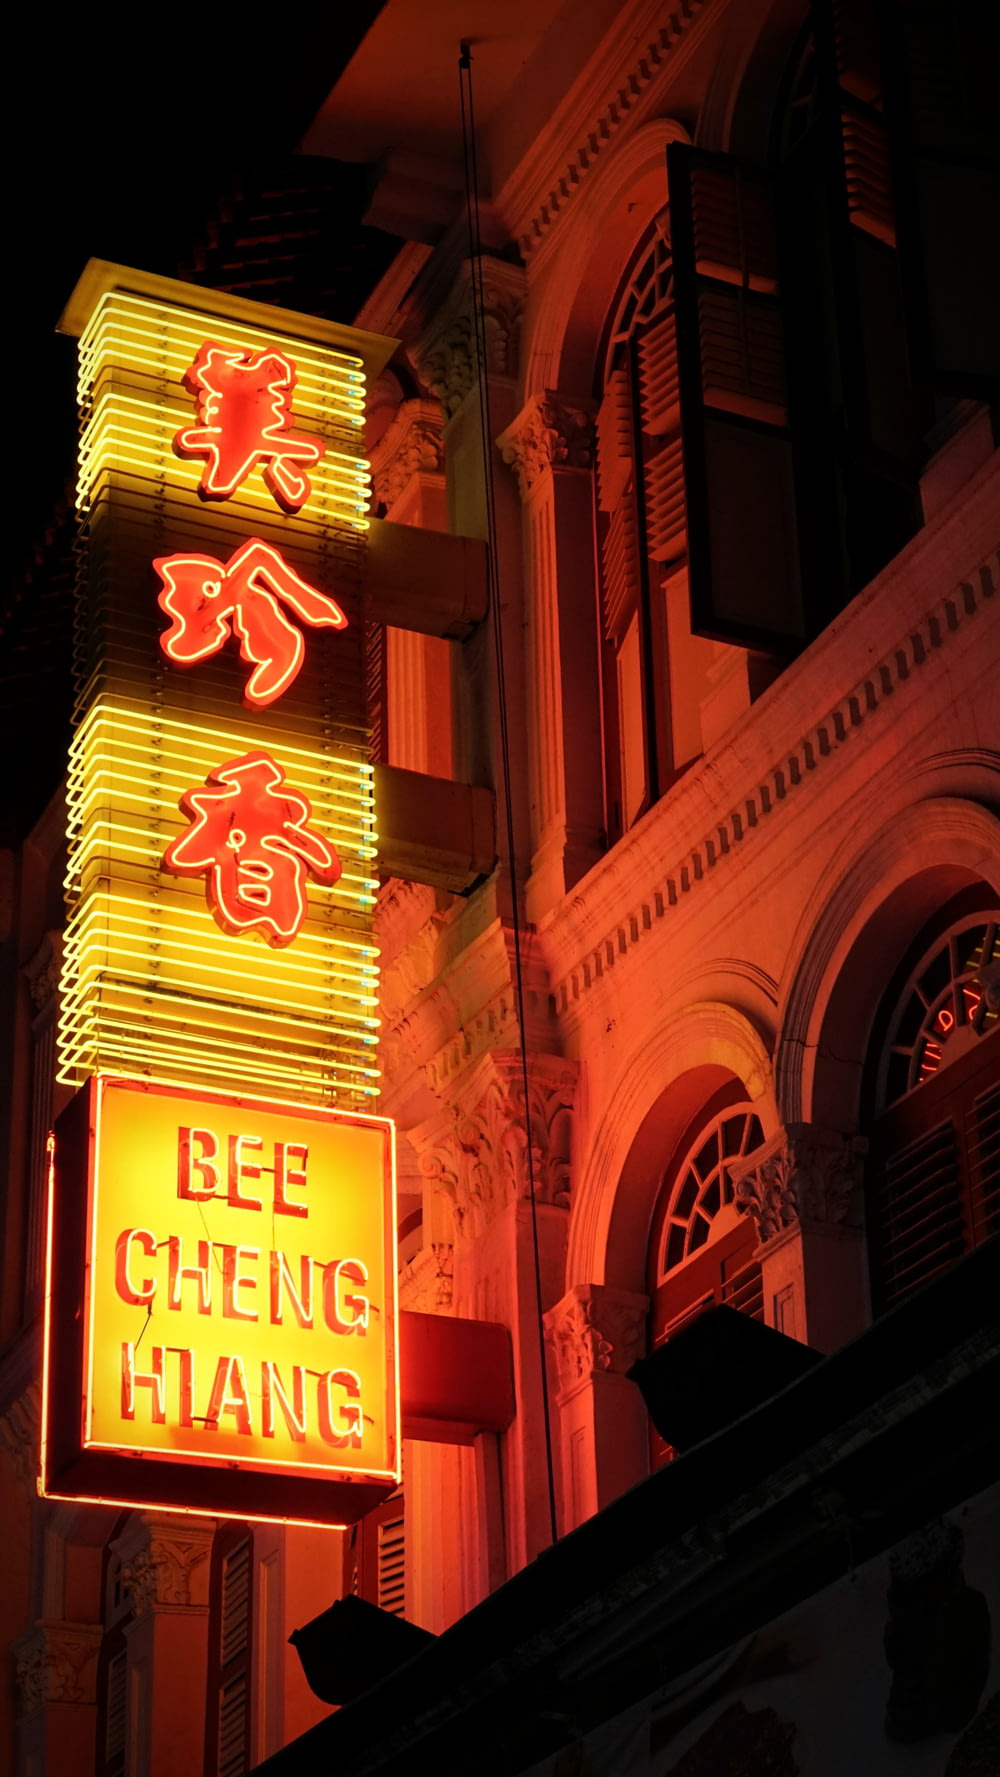 Bee Cheng Haing sigange